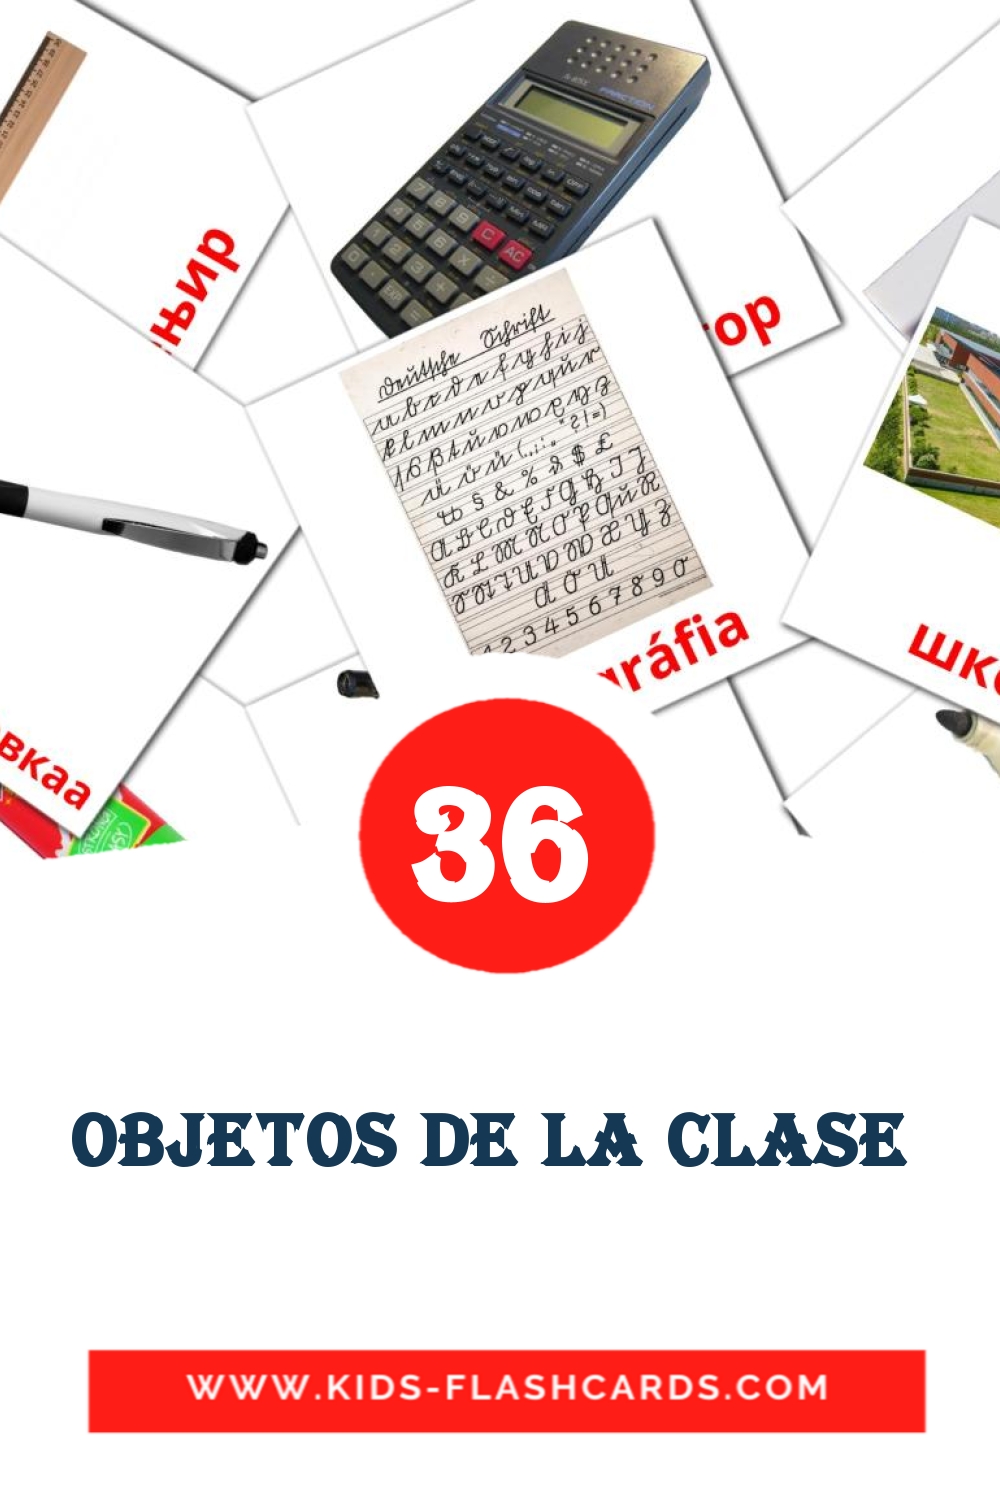 36 tarjetas didacticas de objetos de la clase  para el jardín de infancia en amhárico